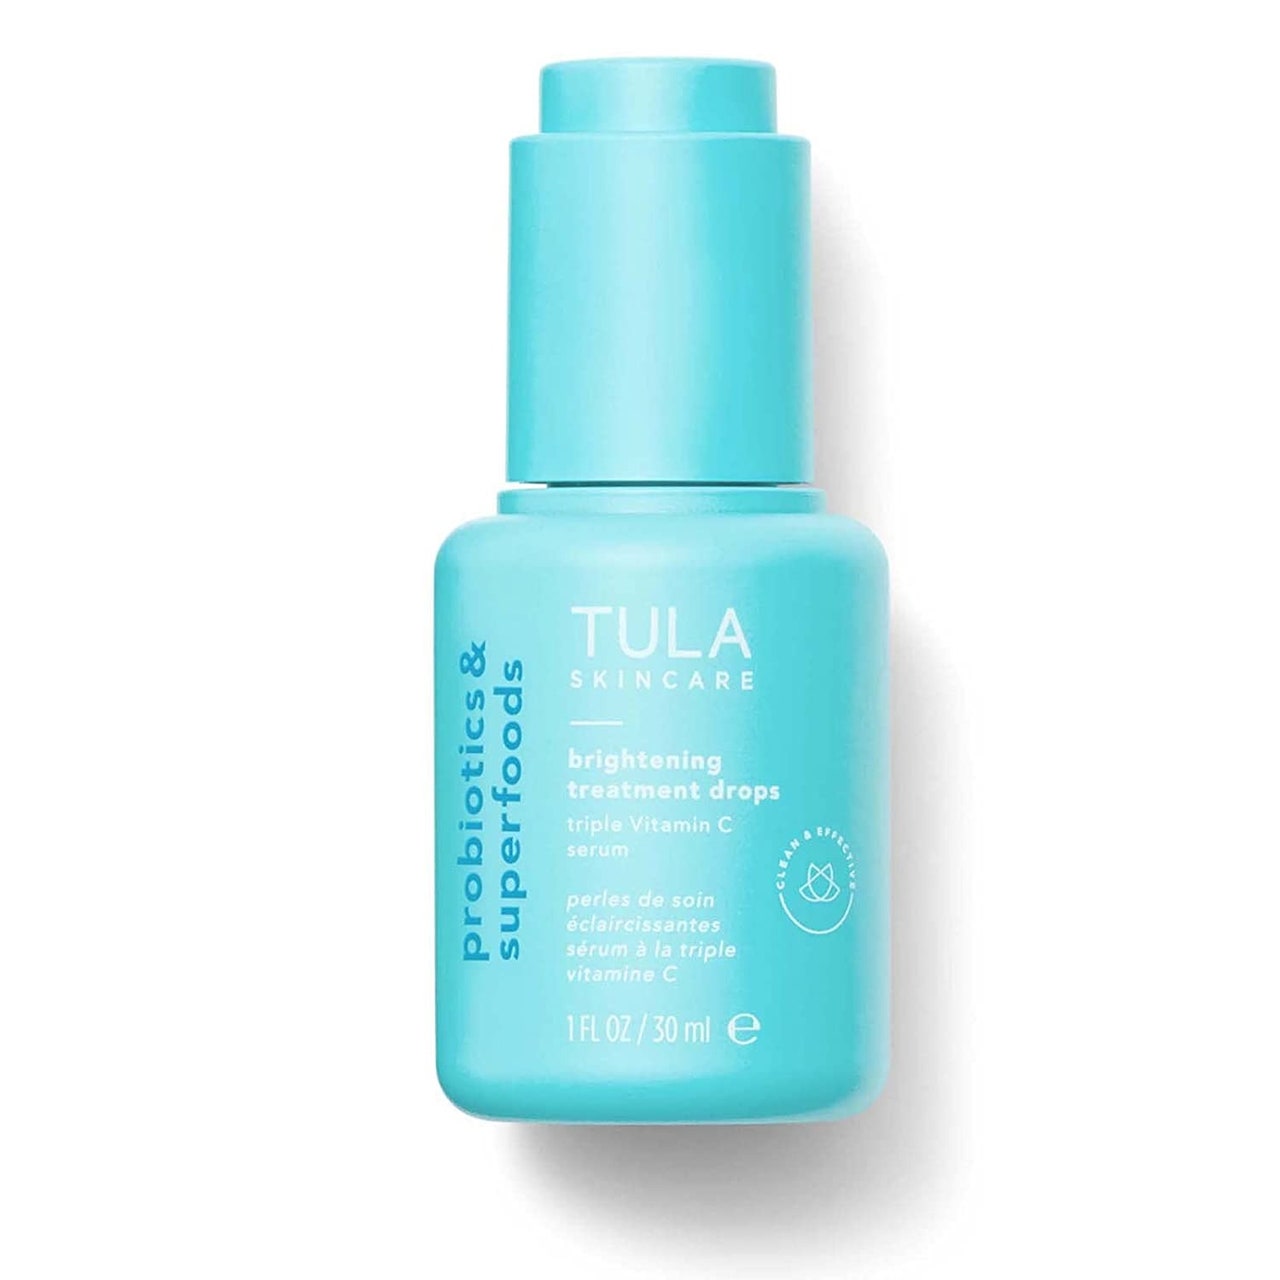 Eine leuchtend blaue Flasche Tula Skincare Brightening Treatment Drops auf weißem Hintergrund